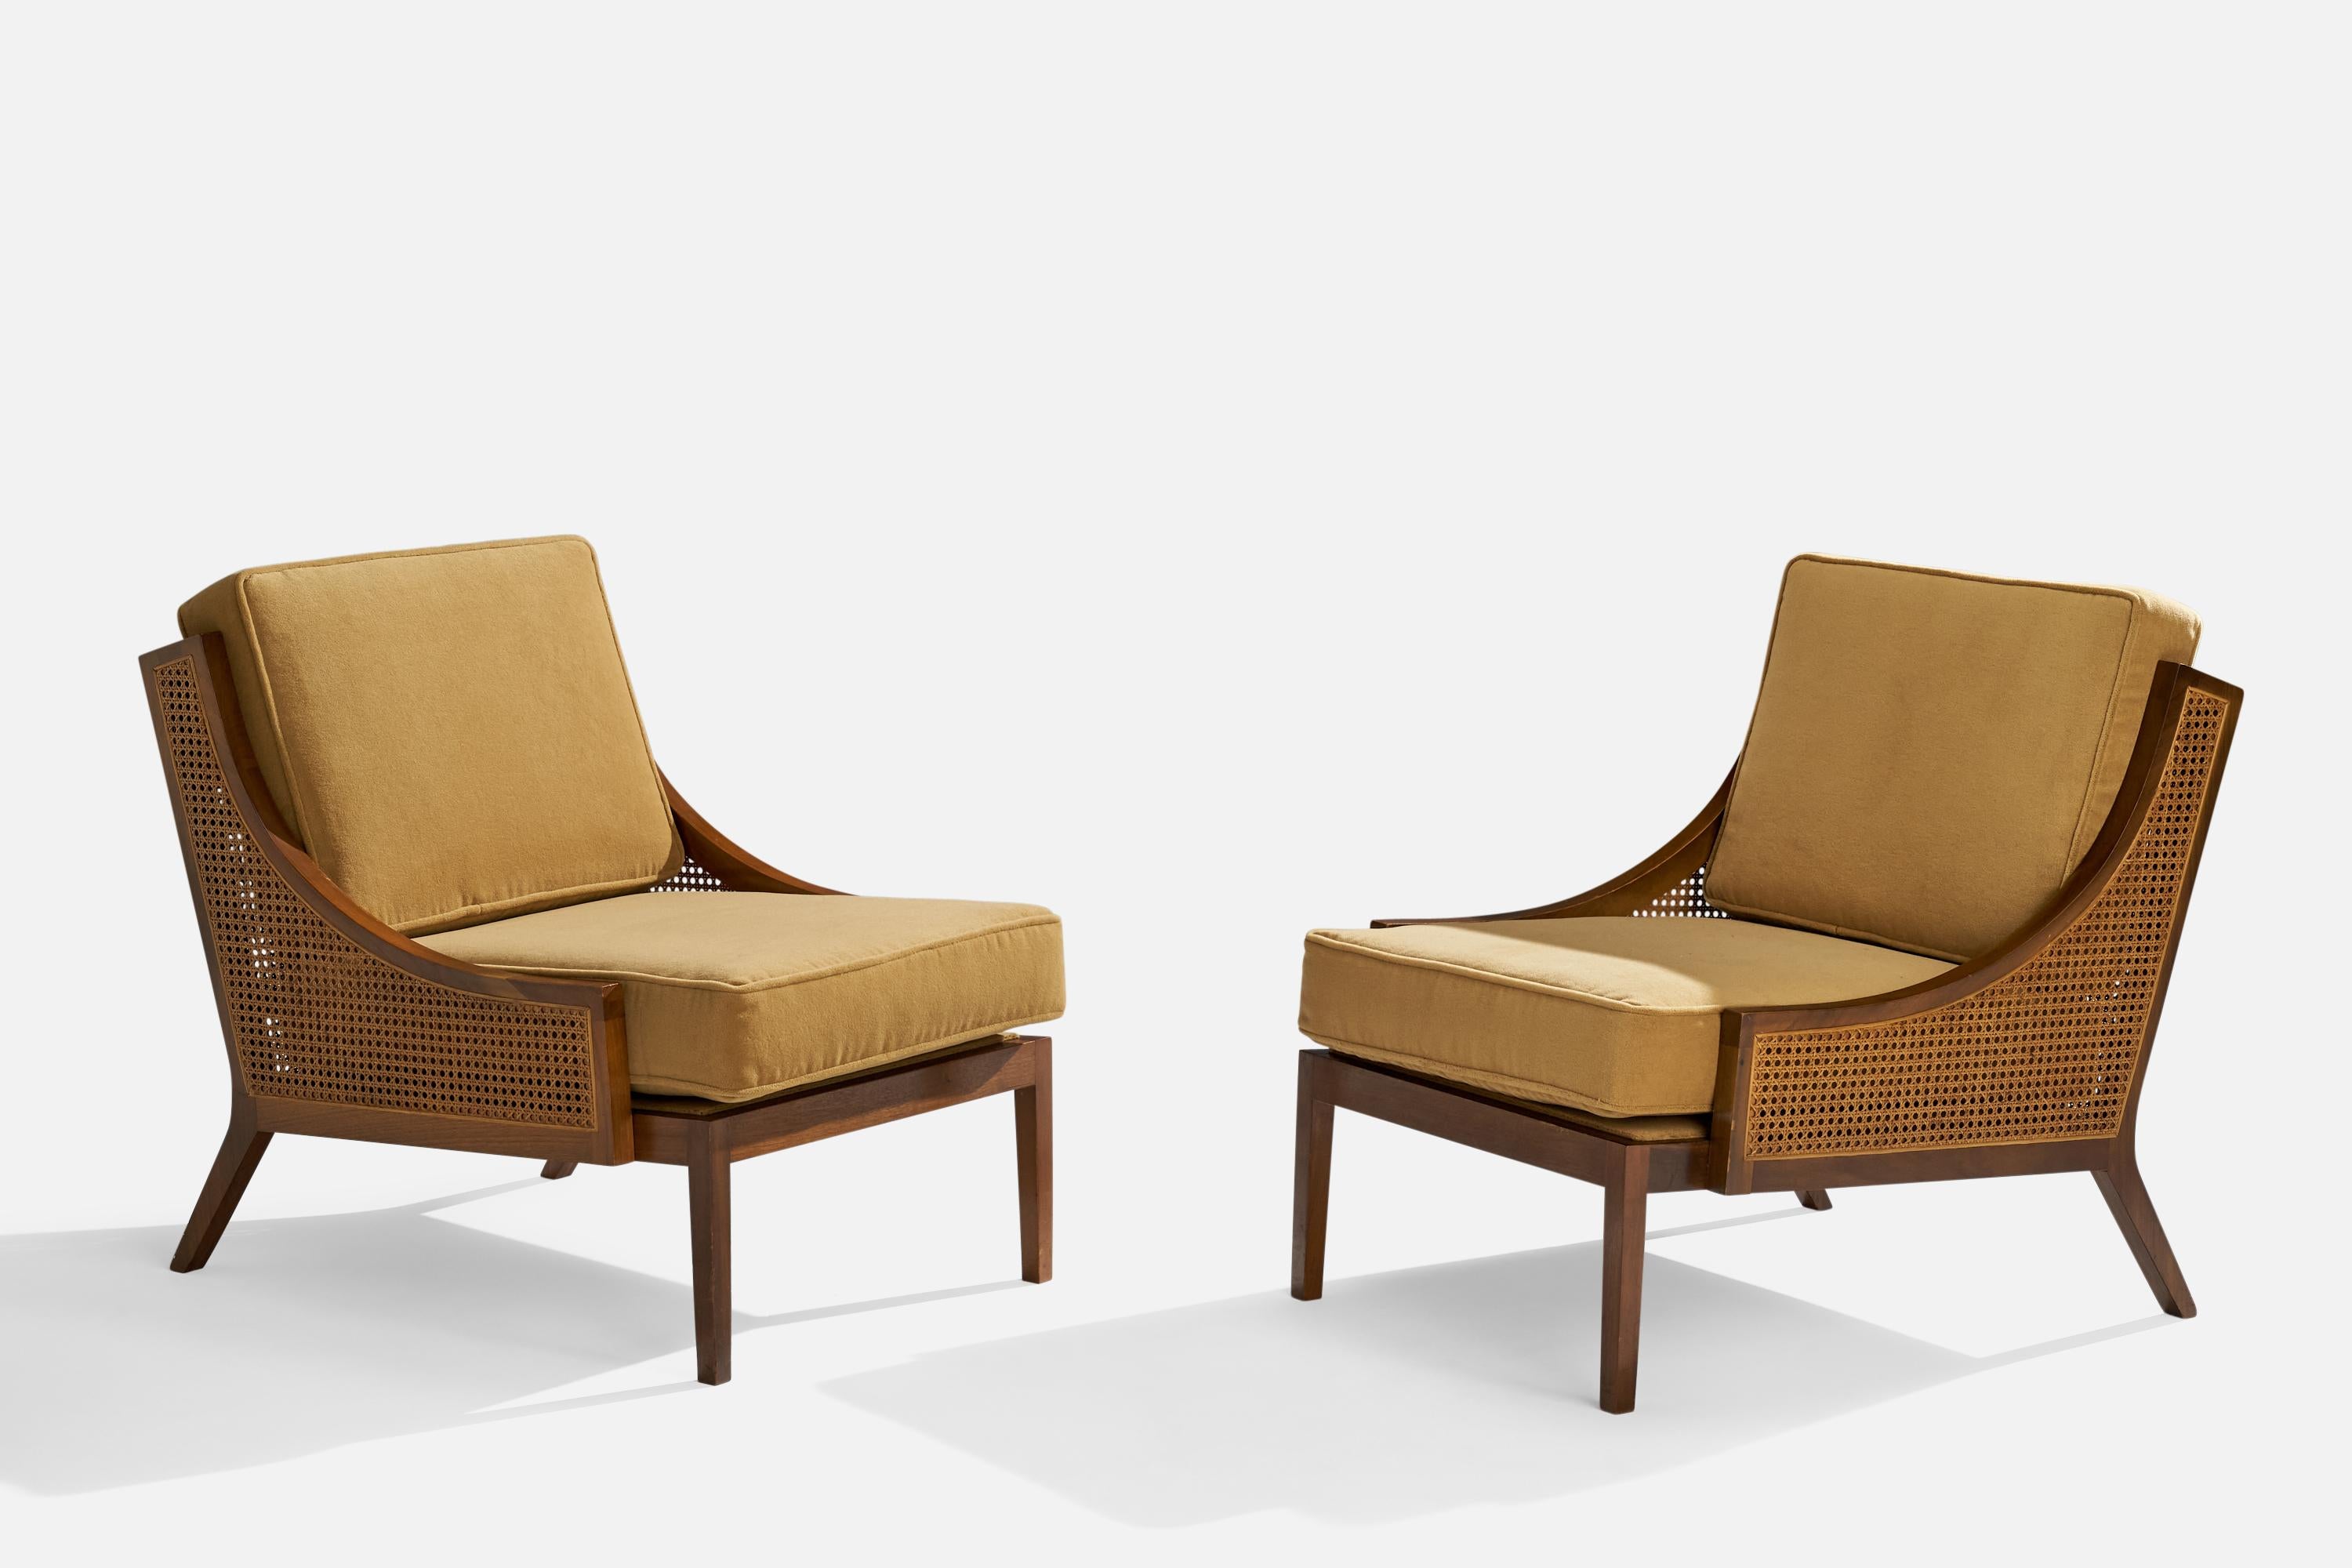 Ein Paar Sessel aus Nussbaumholz, beigegelbem Samt und Rattan, entworfen und hergestellt in den USA, 1950er Jahre.

Sitzhöhe 16,5